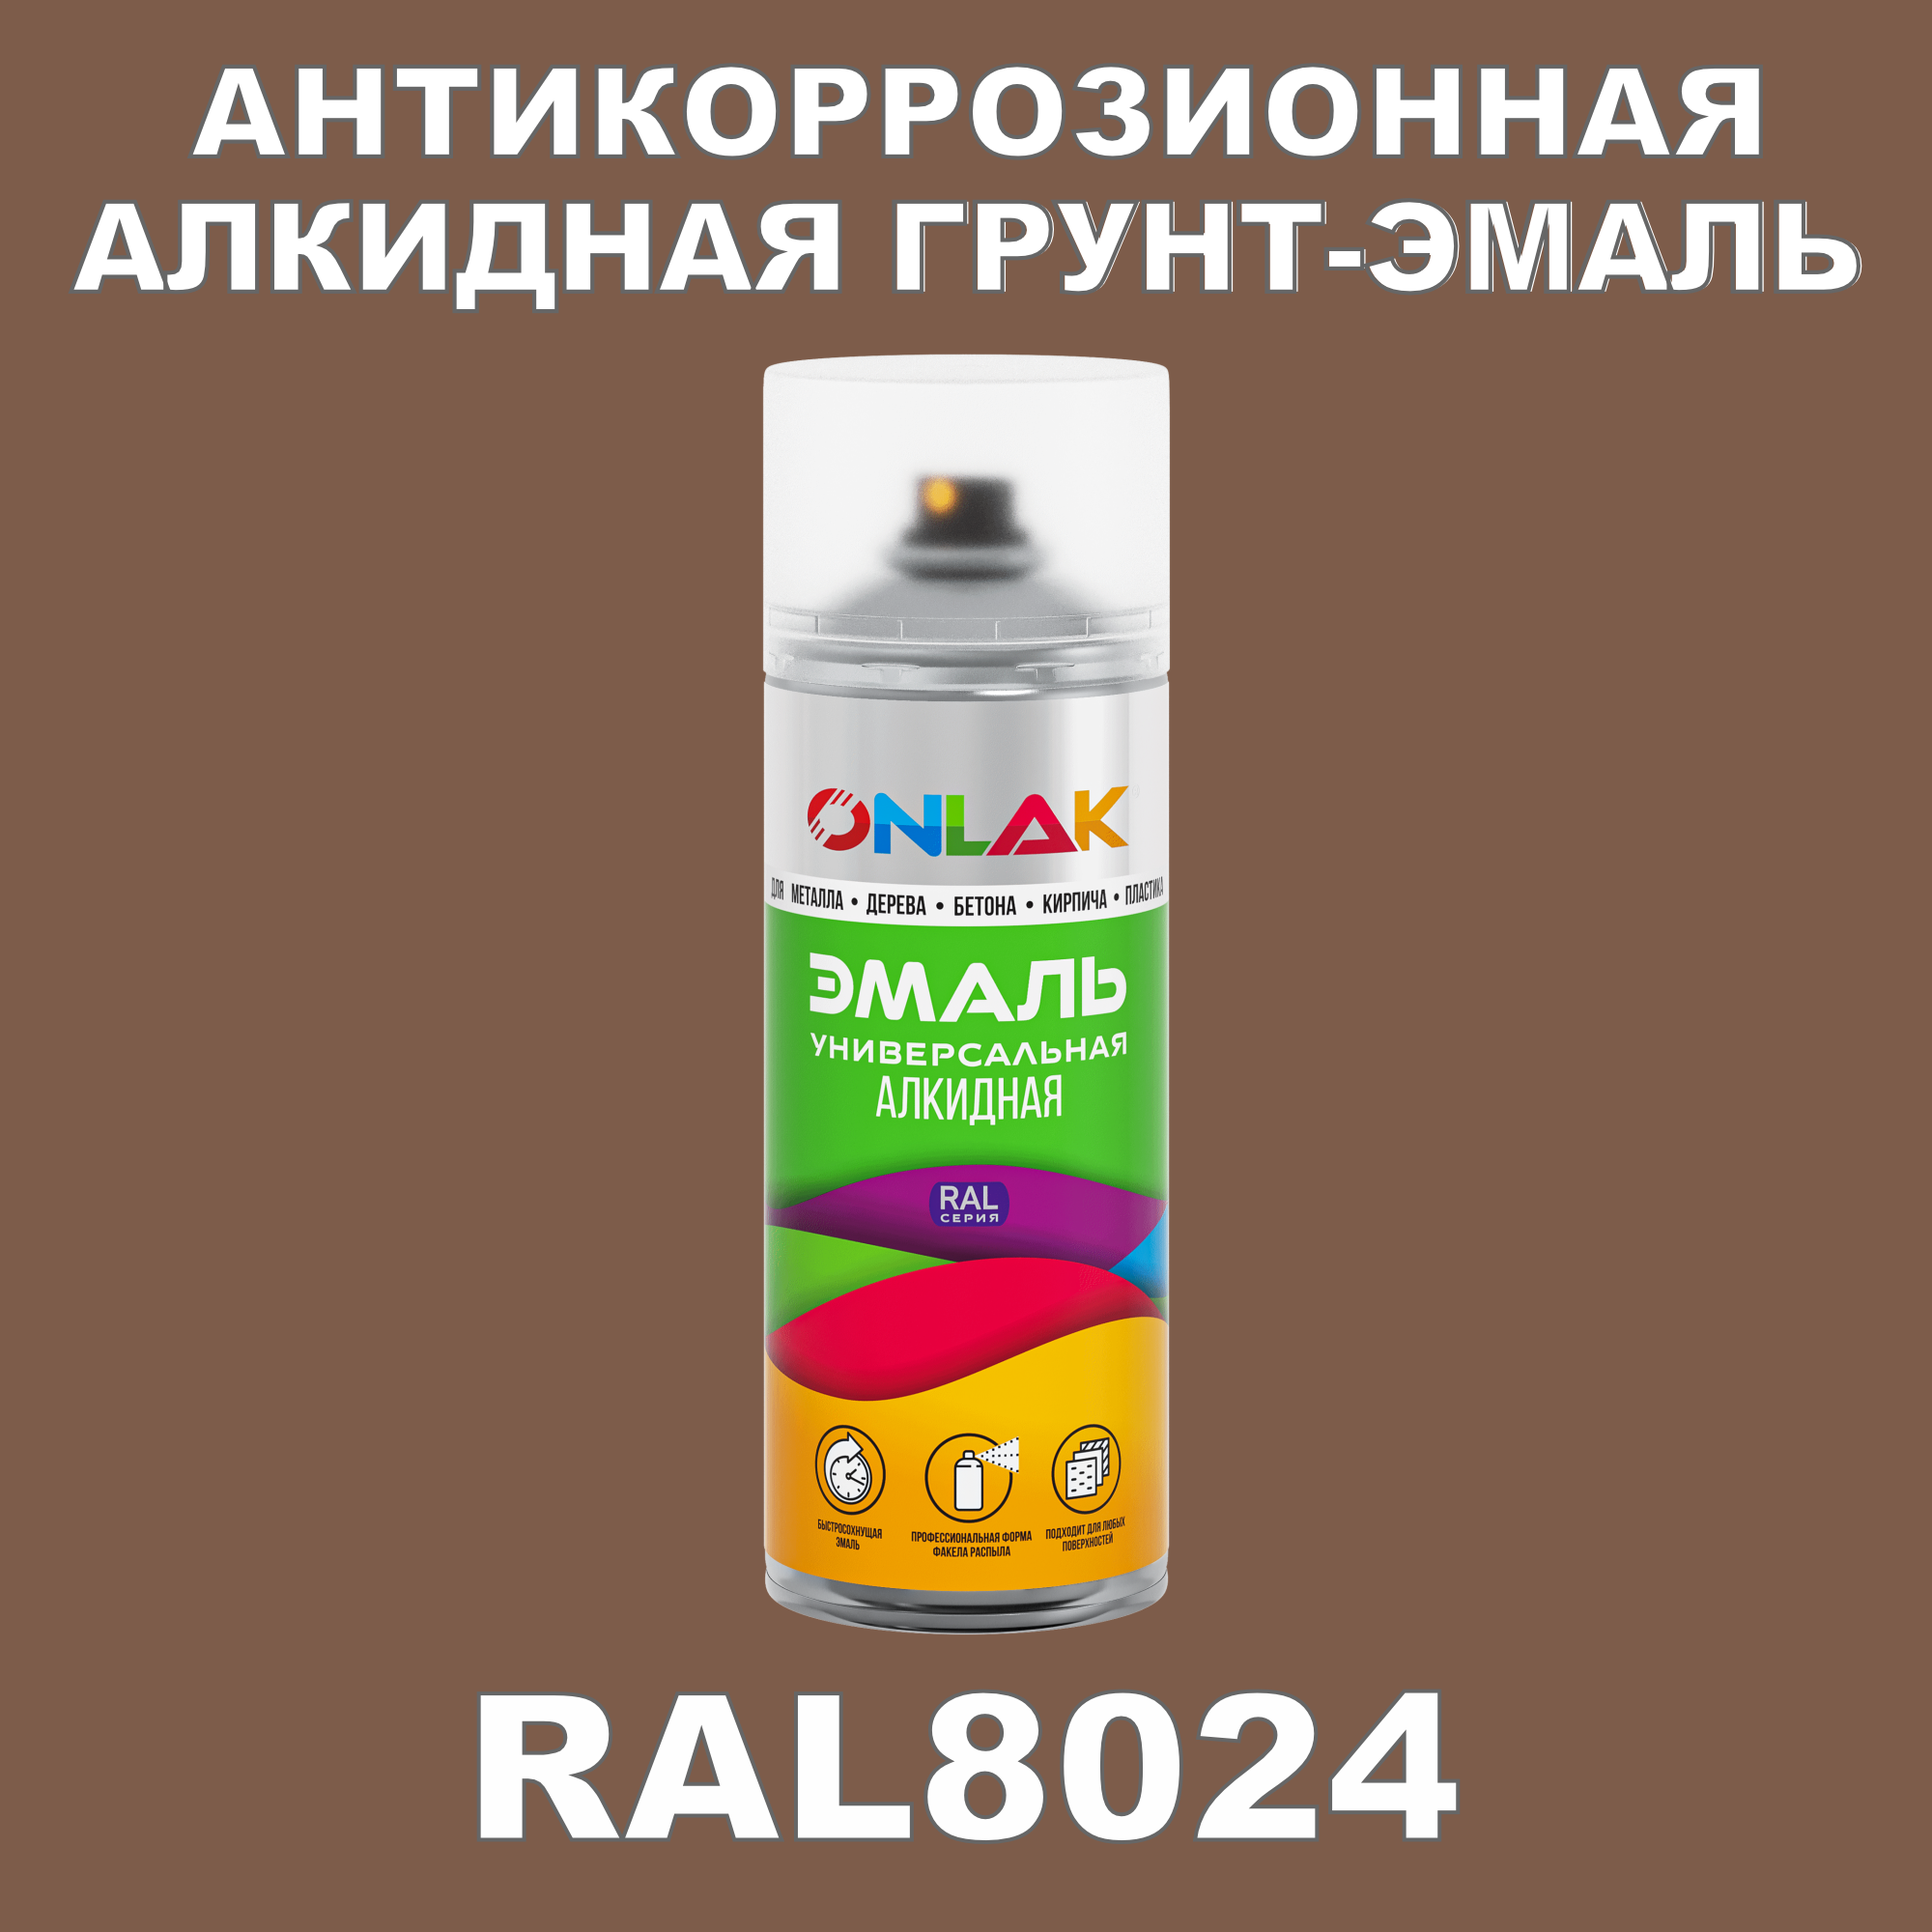 Антикоррозионная грунт-эмаль ONLAK RAL8024 полуматовая для металла и защиты от ржавчины